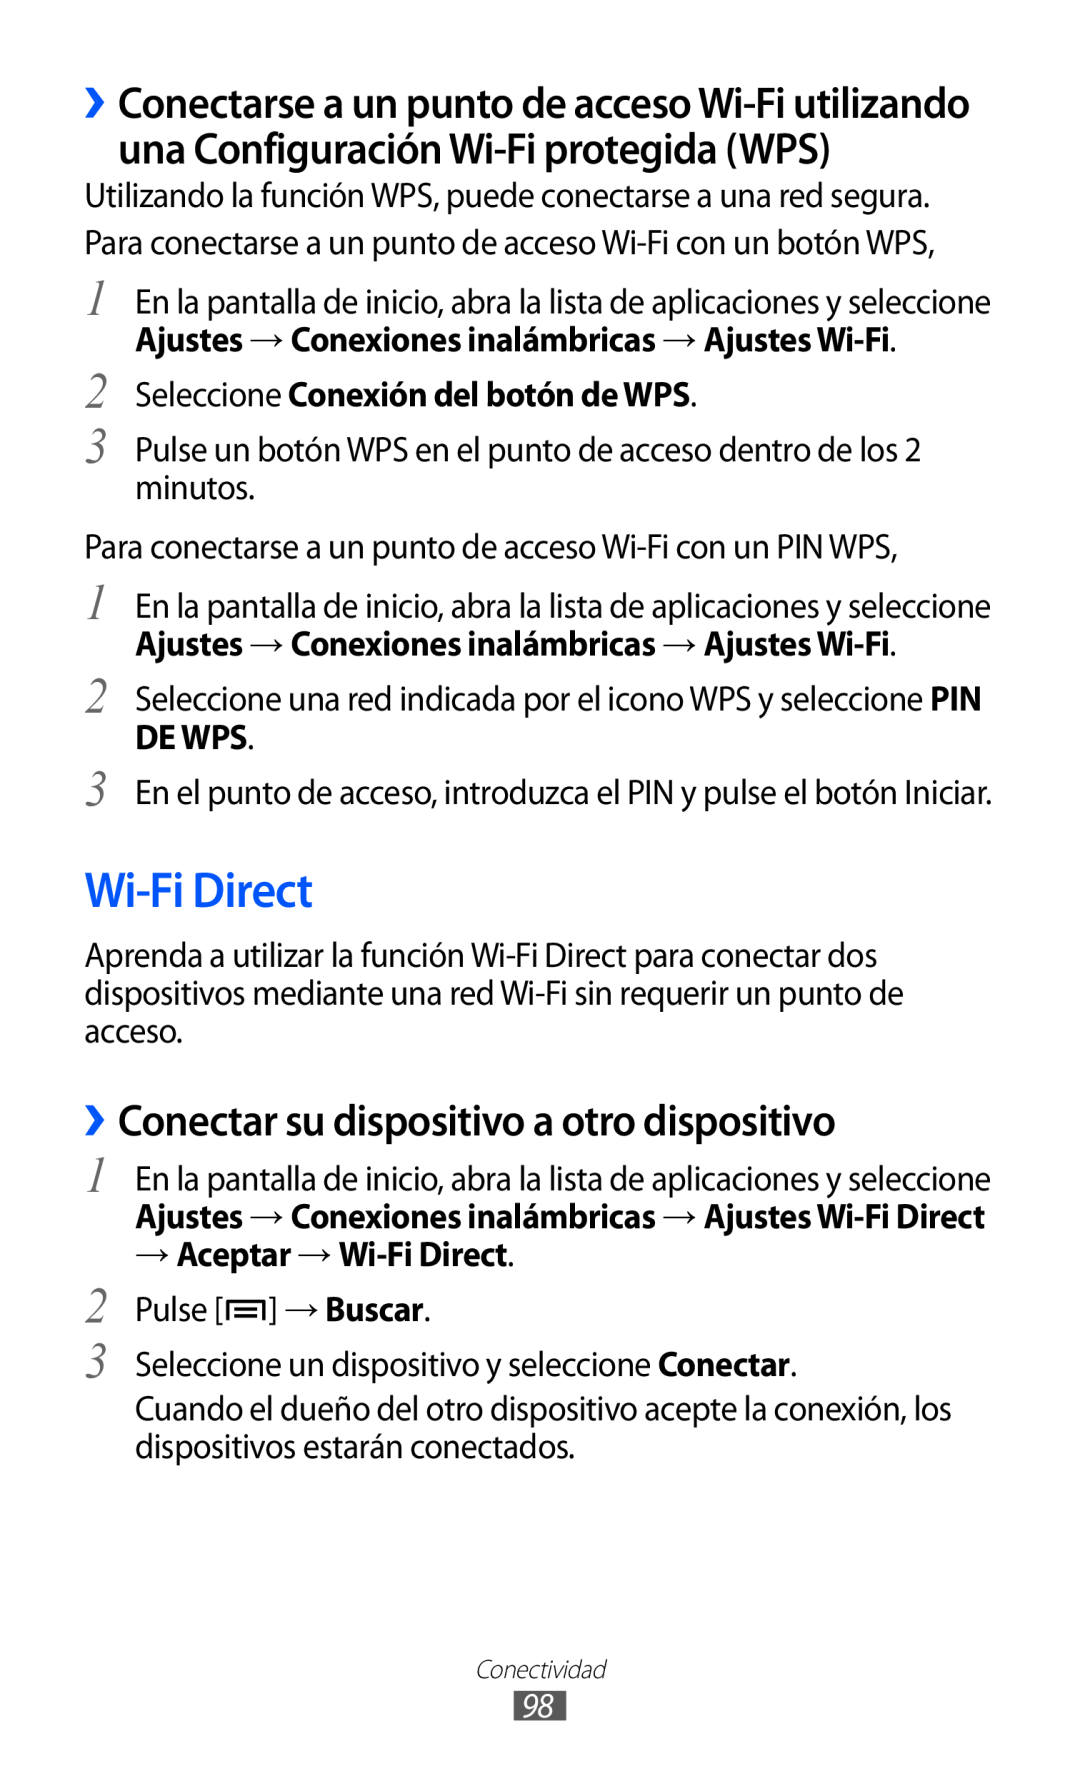 Samsung GT-S6500RWAATL Wi-Fi Direct, ››Conectar su dispositivo a otro dispositivo, Seleccione Conexión del botón de WPS 